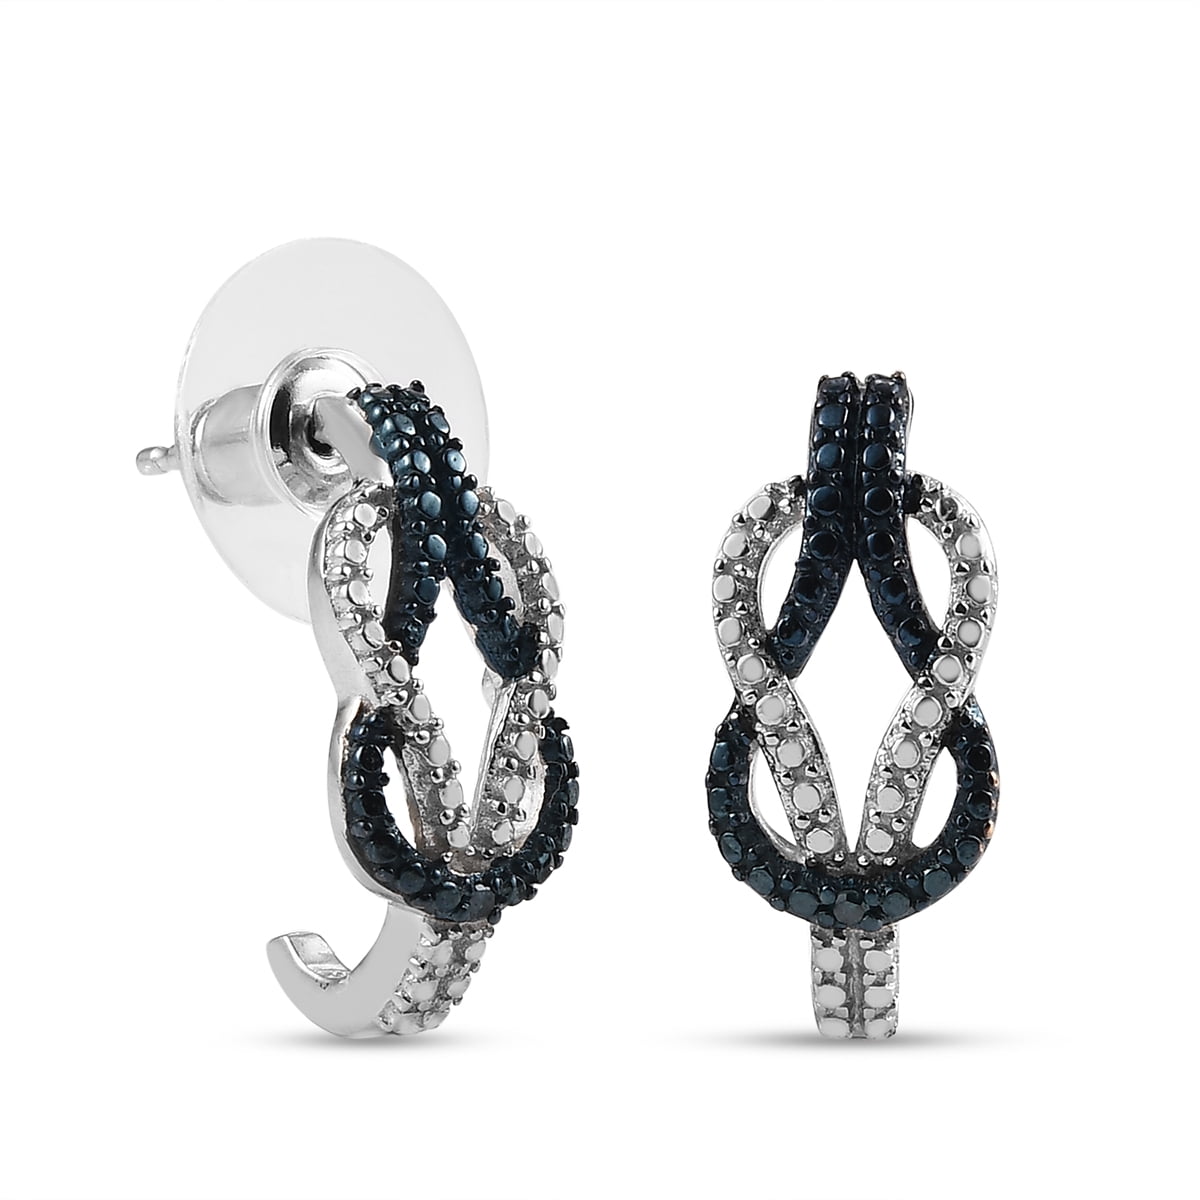 ANDI ROSE Fashion Jewelry Teardrop Drop Hoop 925 Sterling Silver Earrings for Women Girls sterling-silver, 16 MM